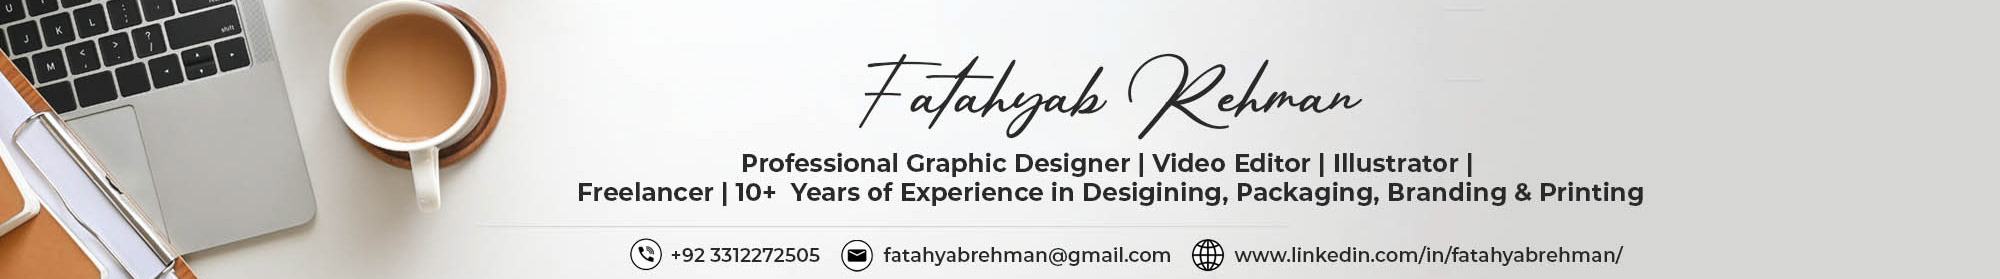 Banner de perfil de Fatahyab Rehman